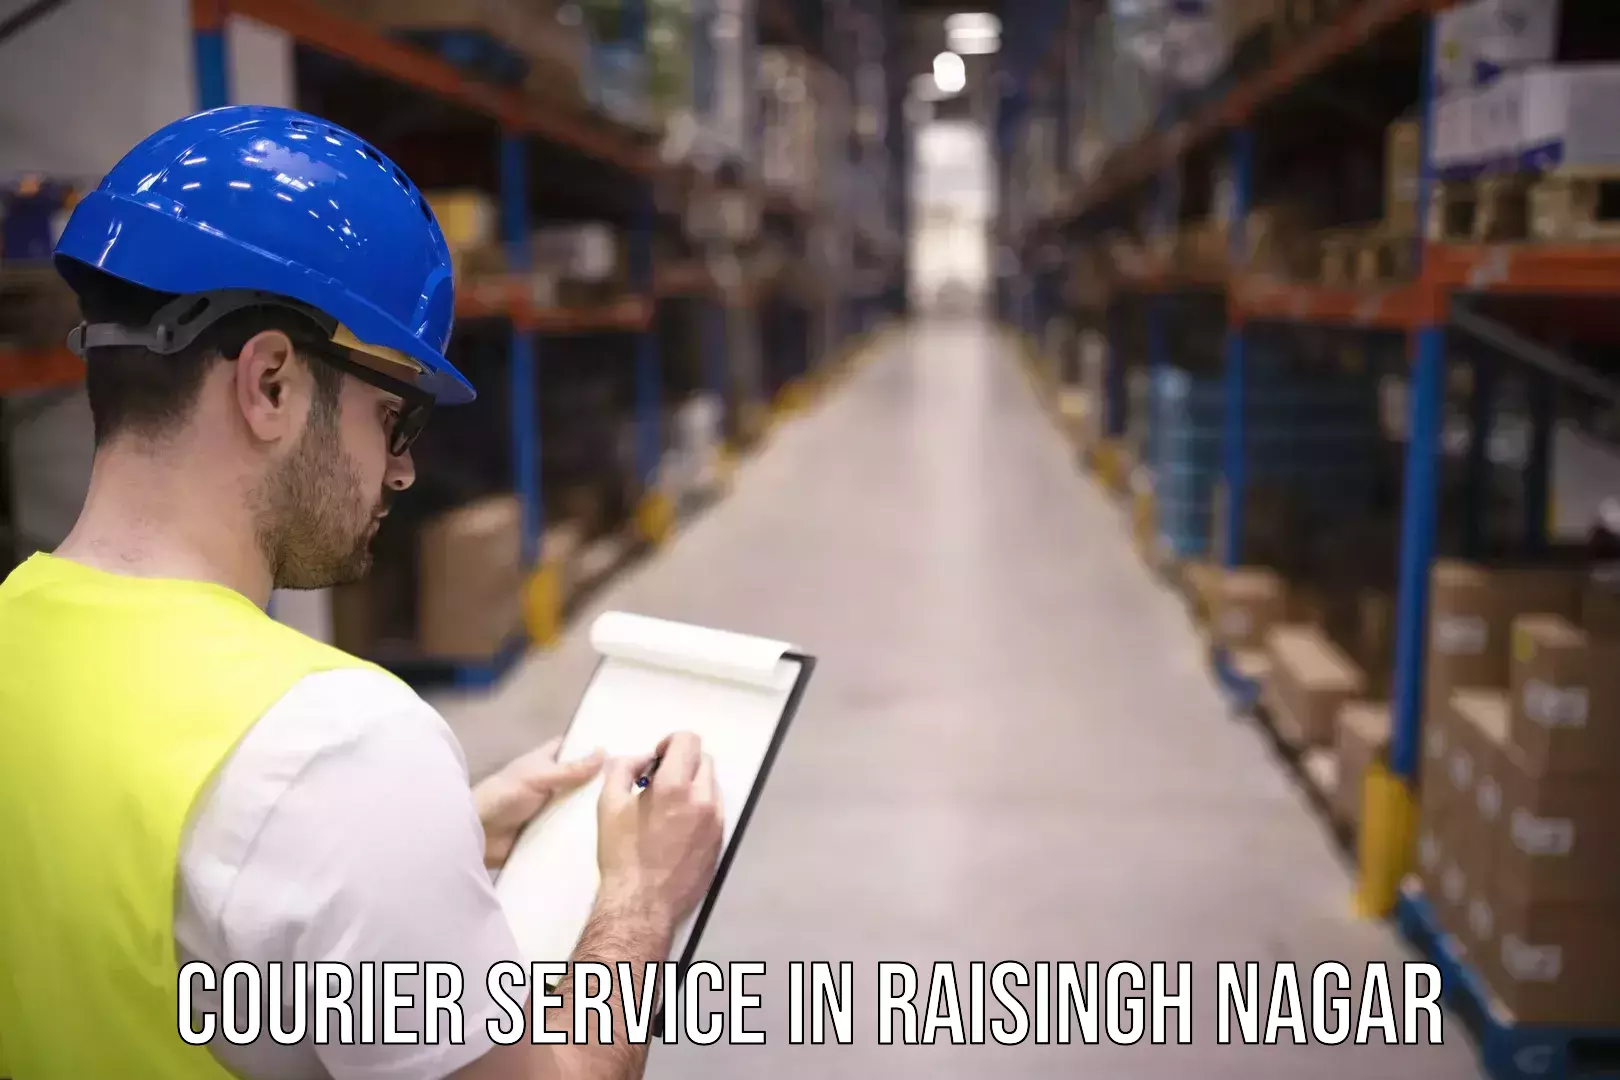 Fast shipping solutions in Raisingh Nagar